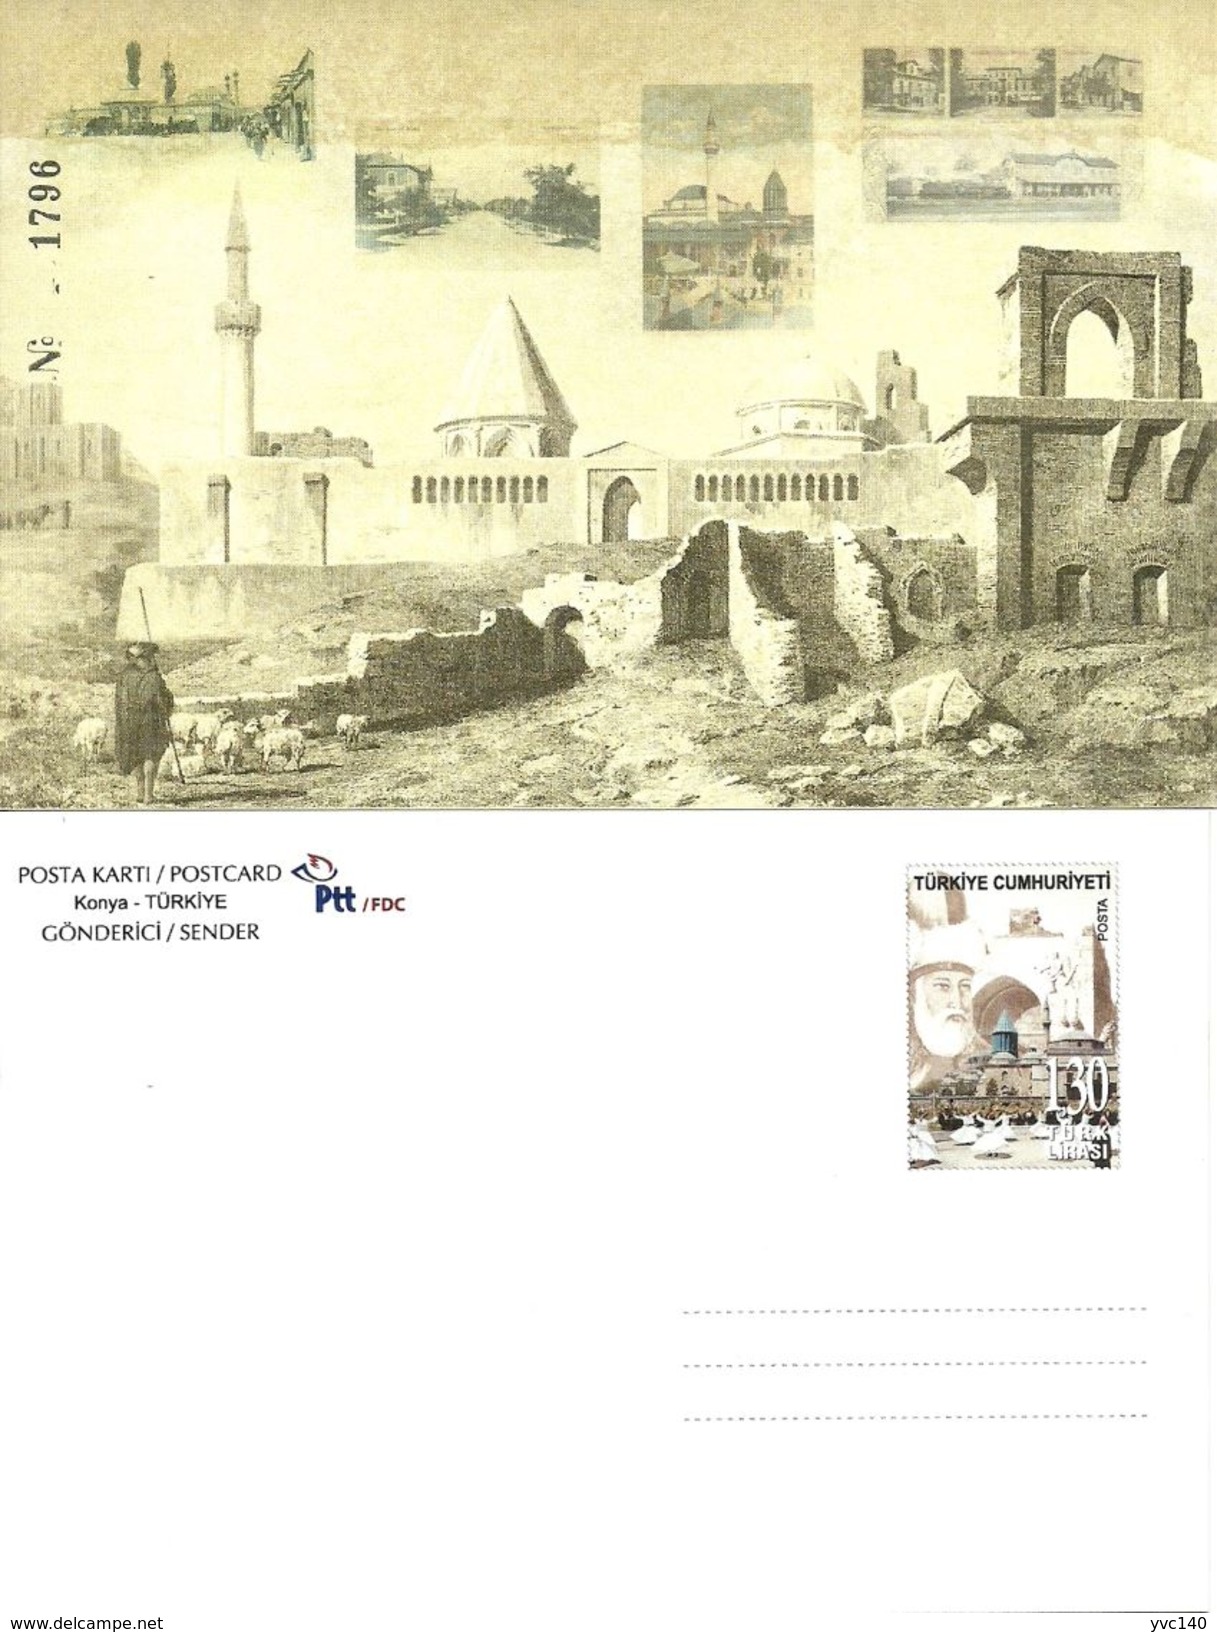 Turkey; 2011 "National Stamp Exhibition, Konya" Special Portfolio - Postal Stationery